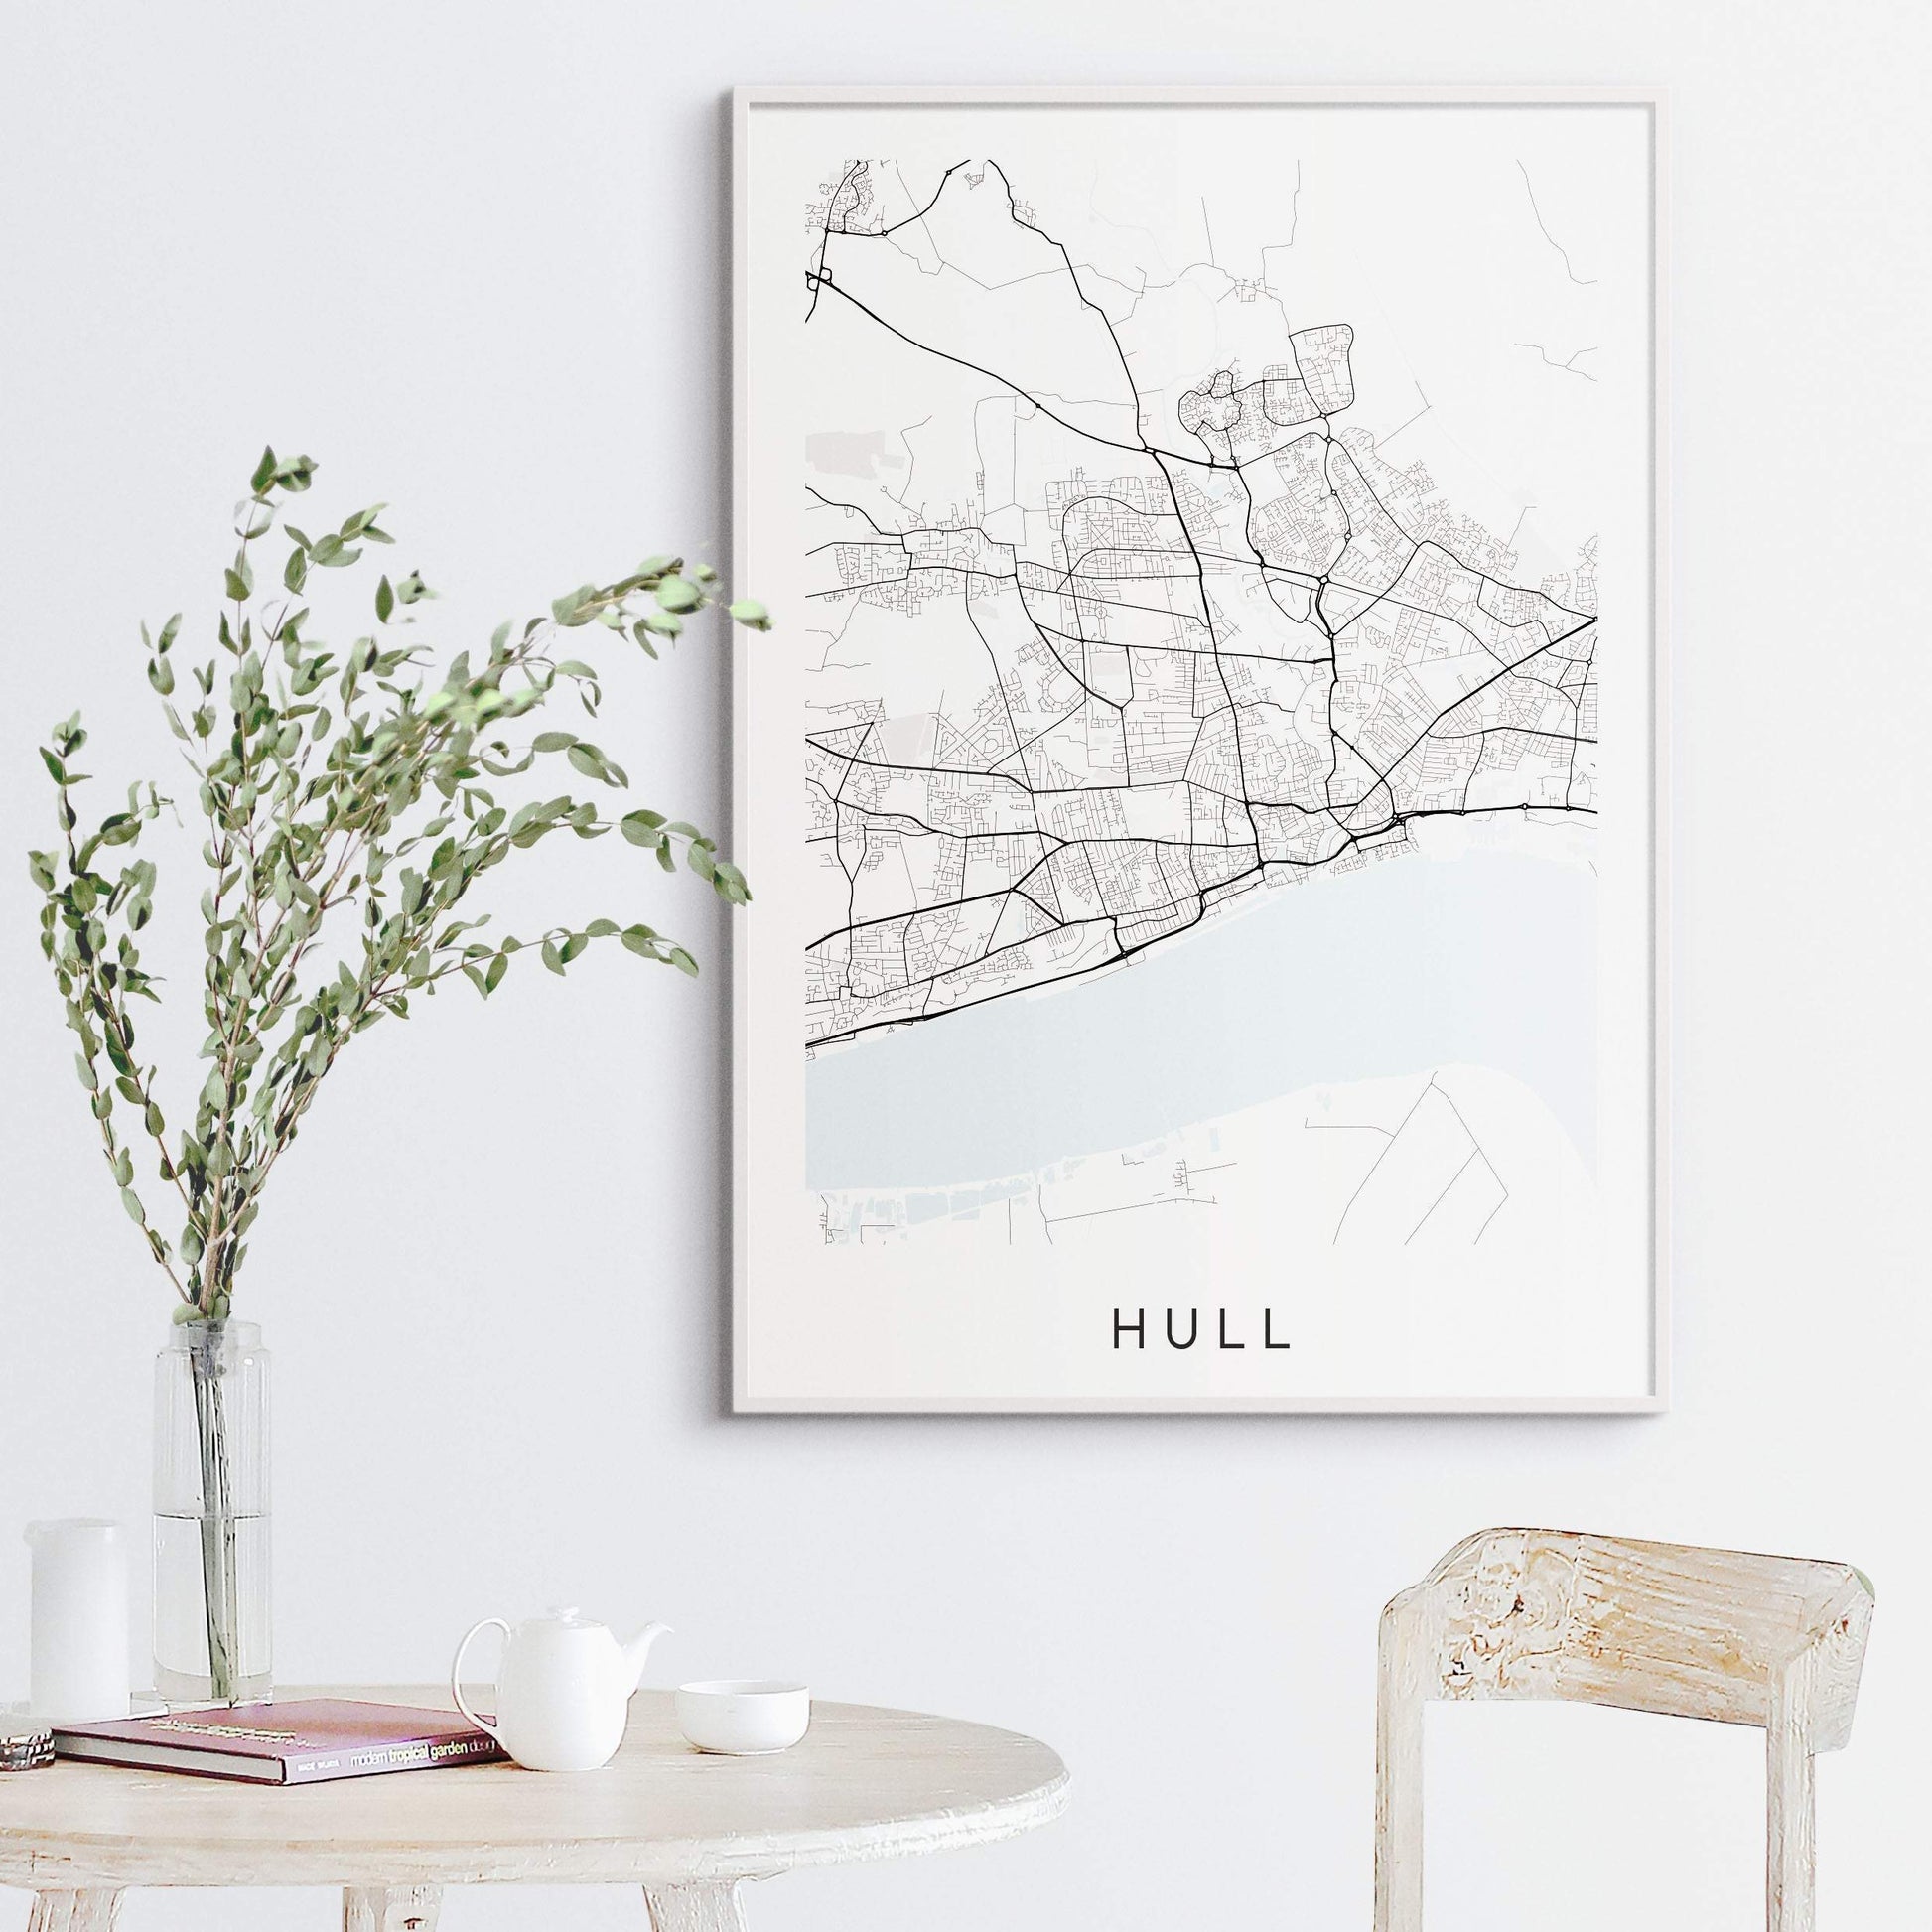 Hull Map Print - Kingston upon Hull